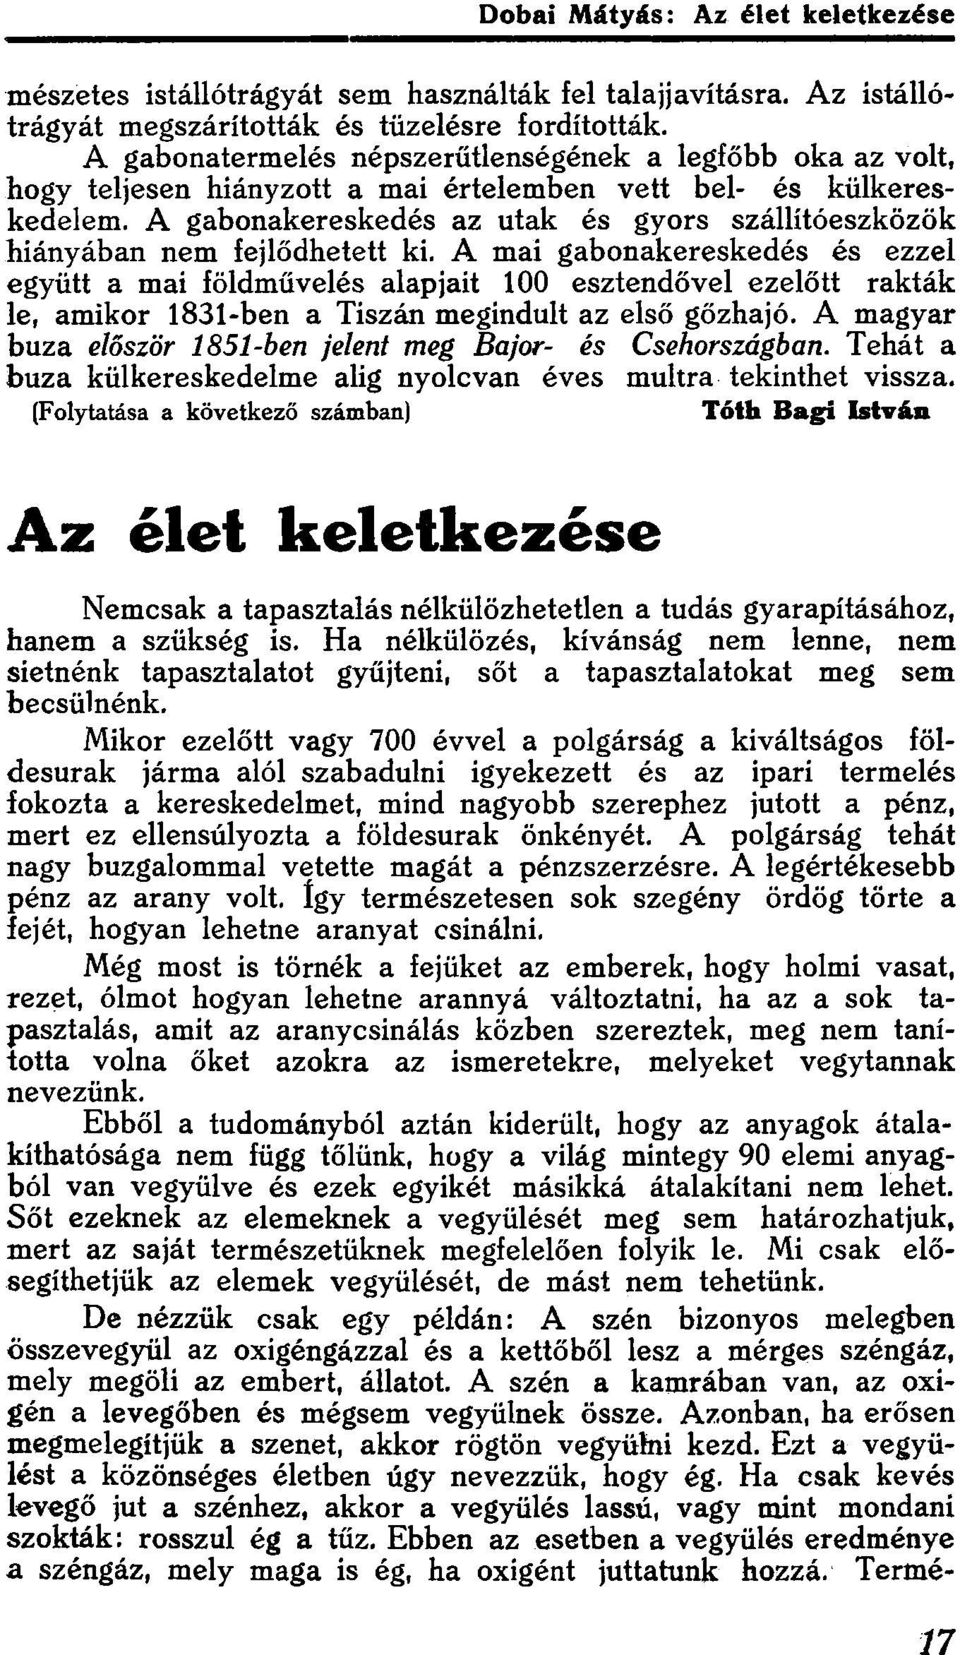 esztendővel ezelőtt rakták le, amikor 1831-ben a Tiszán megindult az első gőzhajó A magyar buza először 1851-ben jelent meg Bajor- és Csehországban Tehát a buza külkereskedelme alig nyolcvan éves